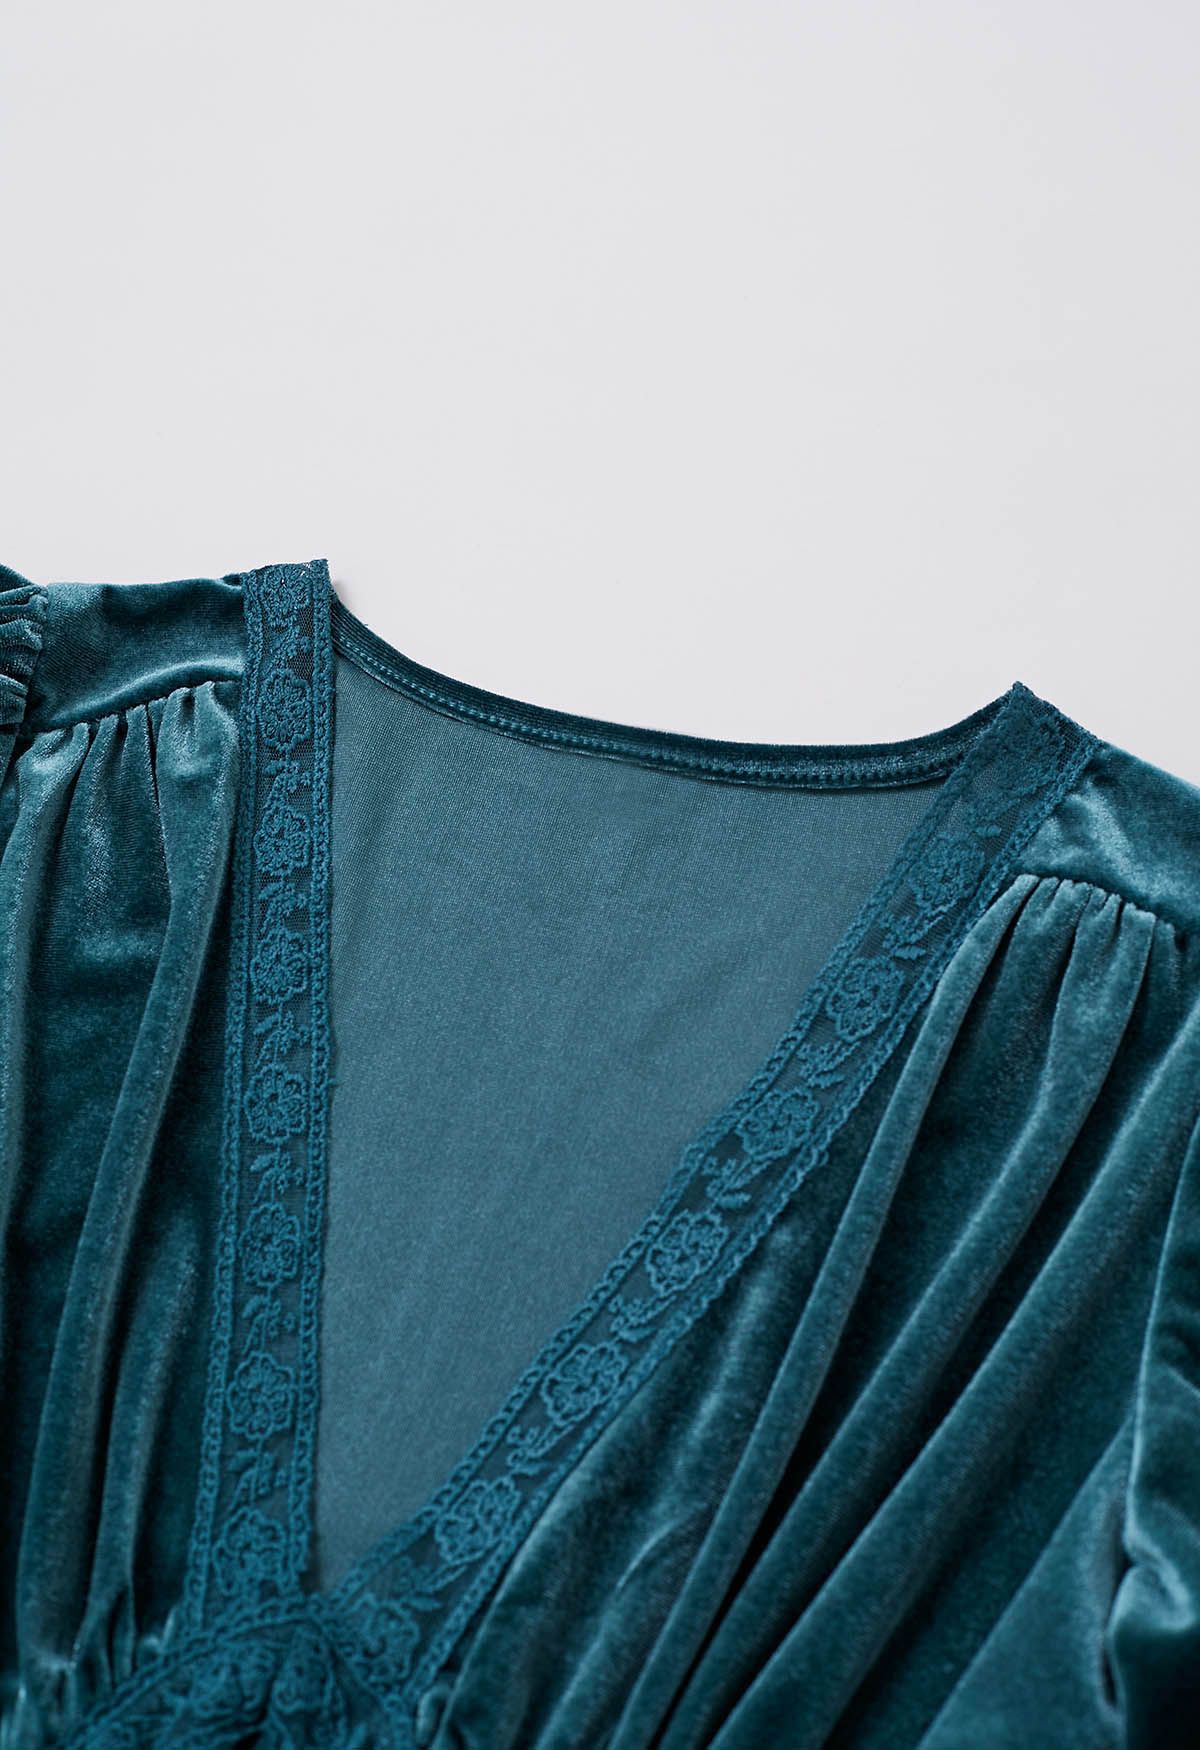 فستان مخملي بأكمام واسعة وياقة على شكل حرف V باللون الأزرق المخضر